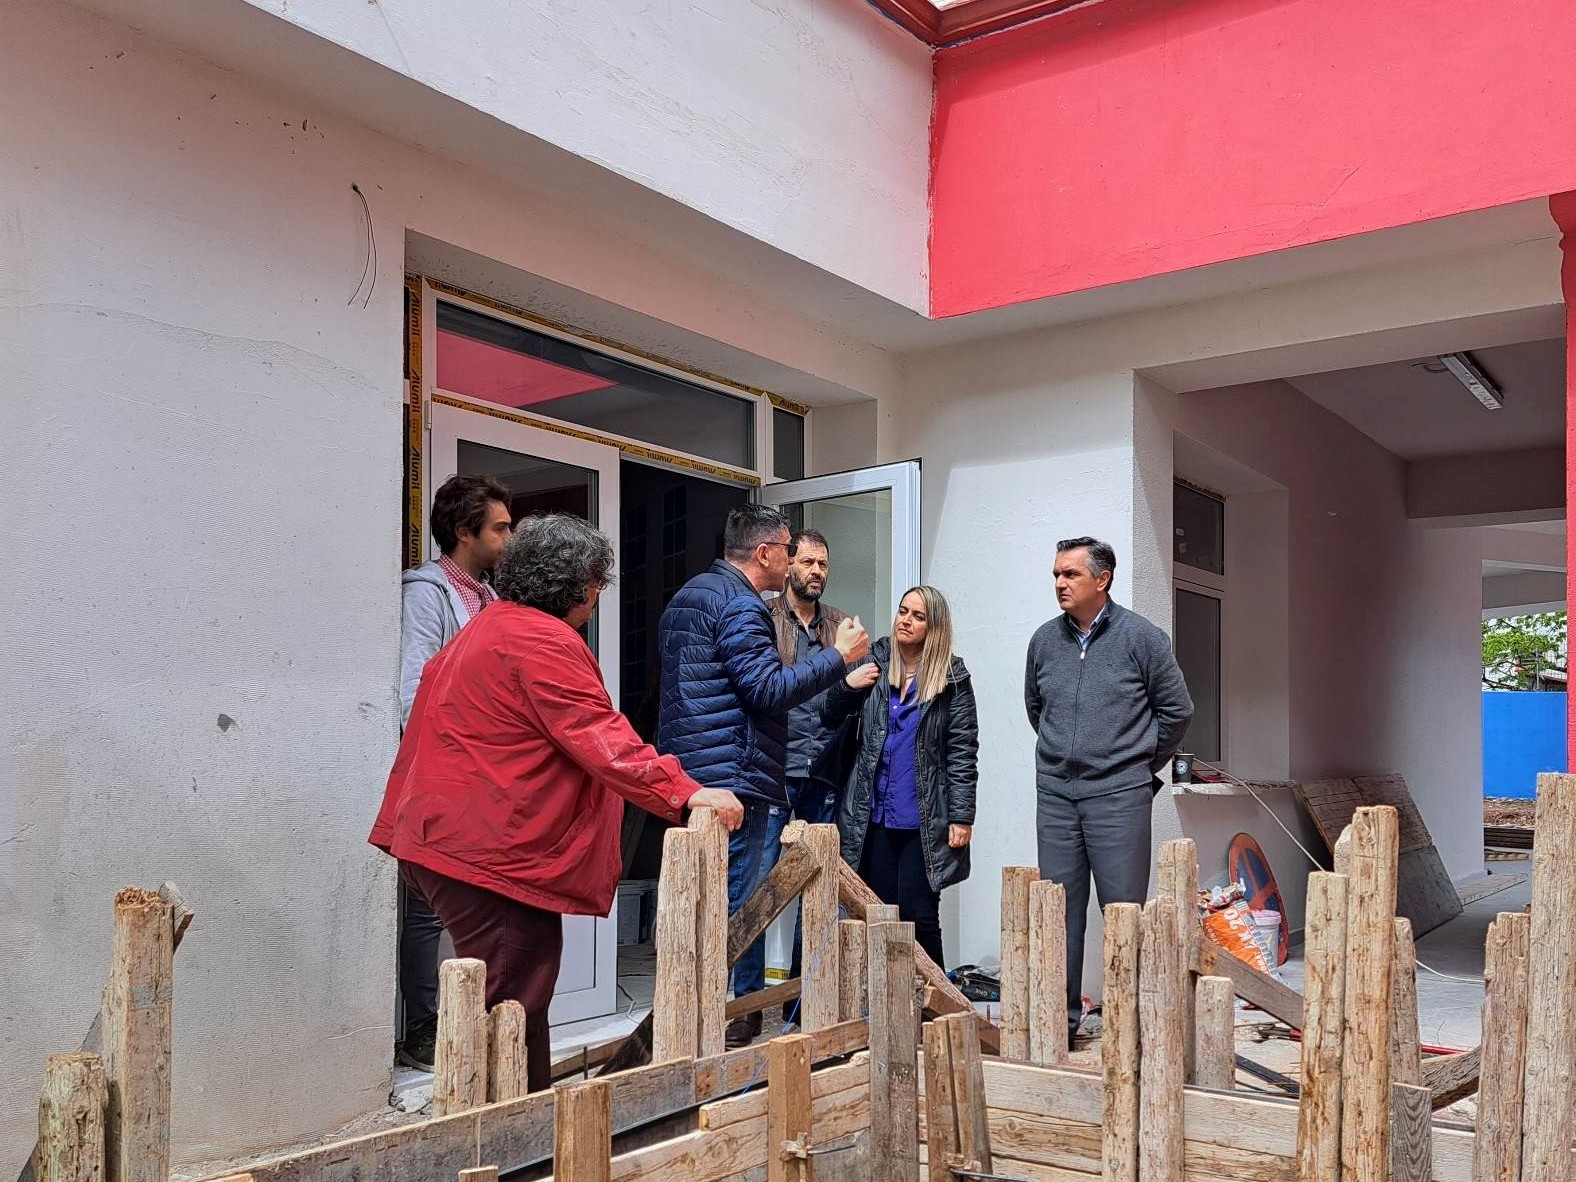 Γ. Κασαπίδης: Στη τελική ευθεία η ανέγερση δύο νηπιαγωγείων στο Δήμο Κοζάνης - Καλύπτουμε τις αυξημένες ανάγκες για νέες σχολικές κτιριακές υποδομές -2-